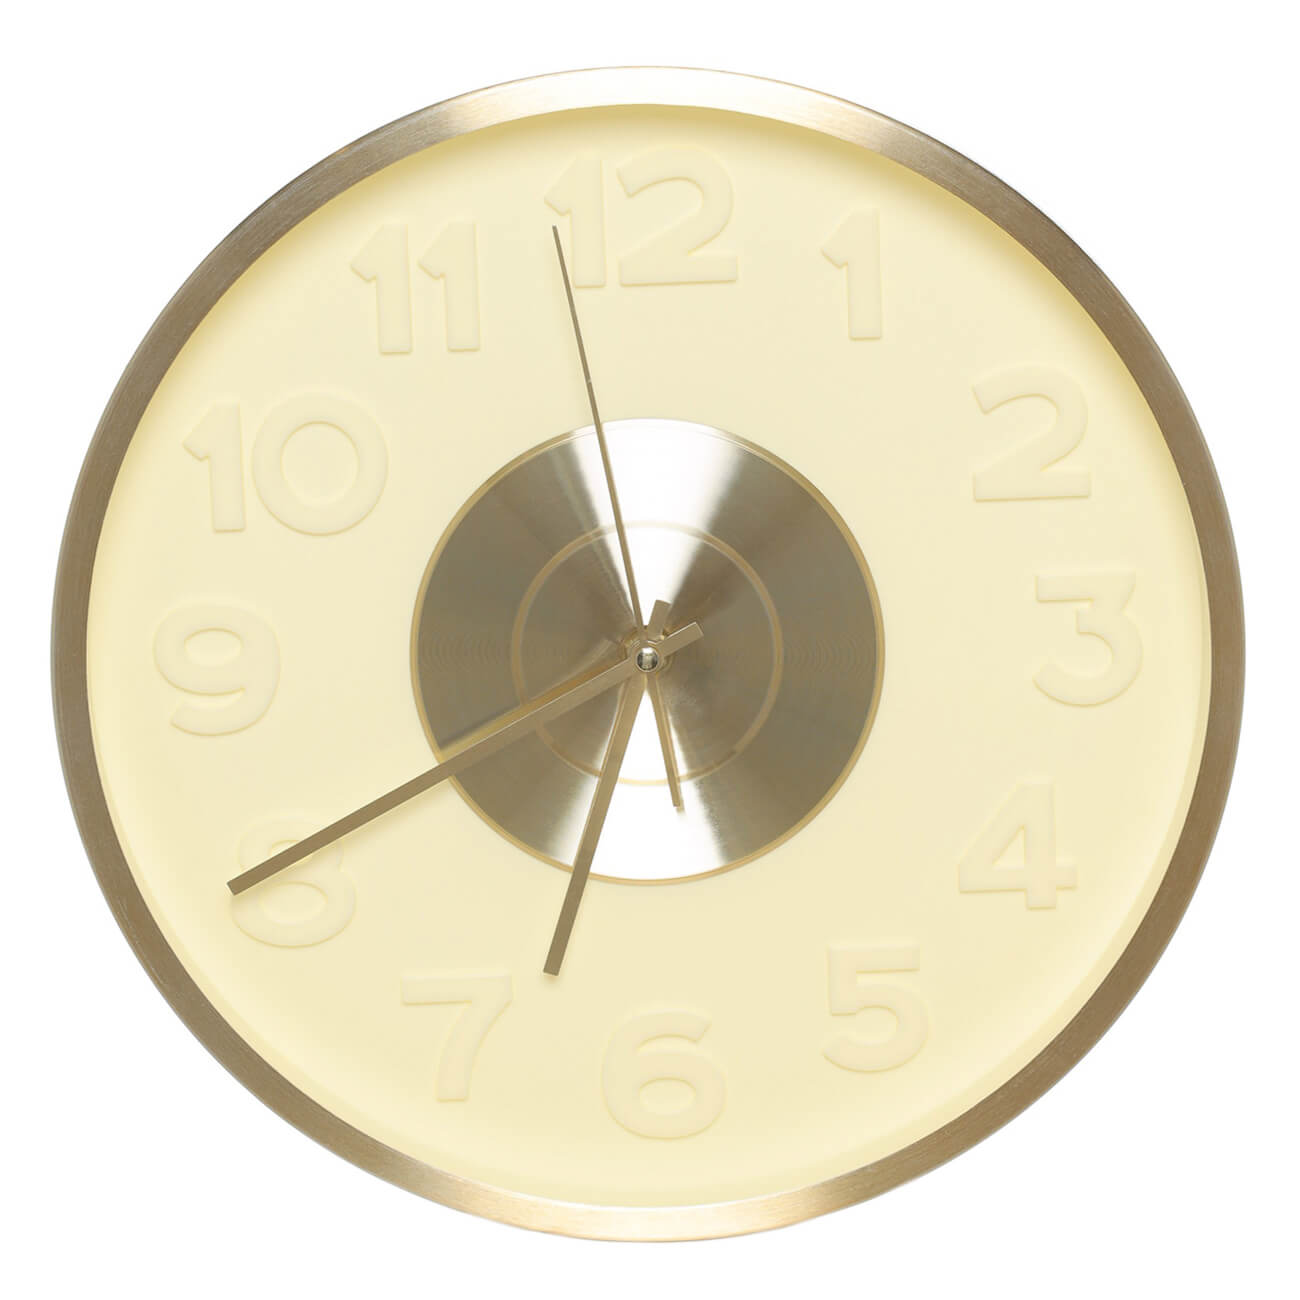 Часы настенные, 30 см, с подсветкой, пластик/стекло, круглые, золотистые, Fantastic gold часы настенные olaff круглые 32х4 5 см арт 152 33040